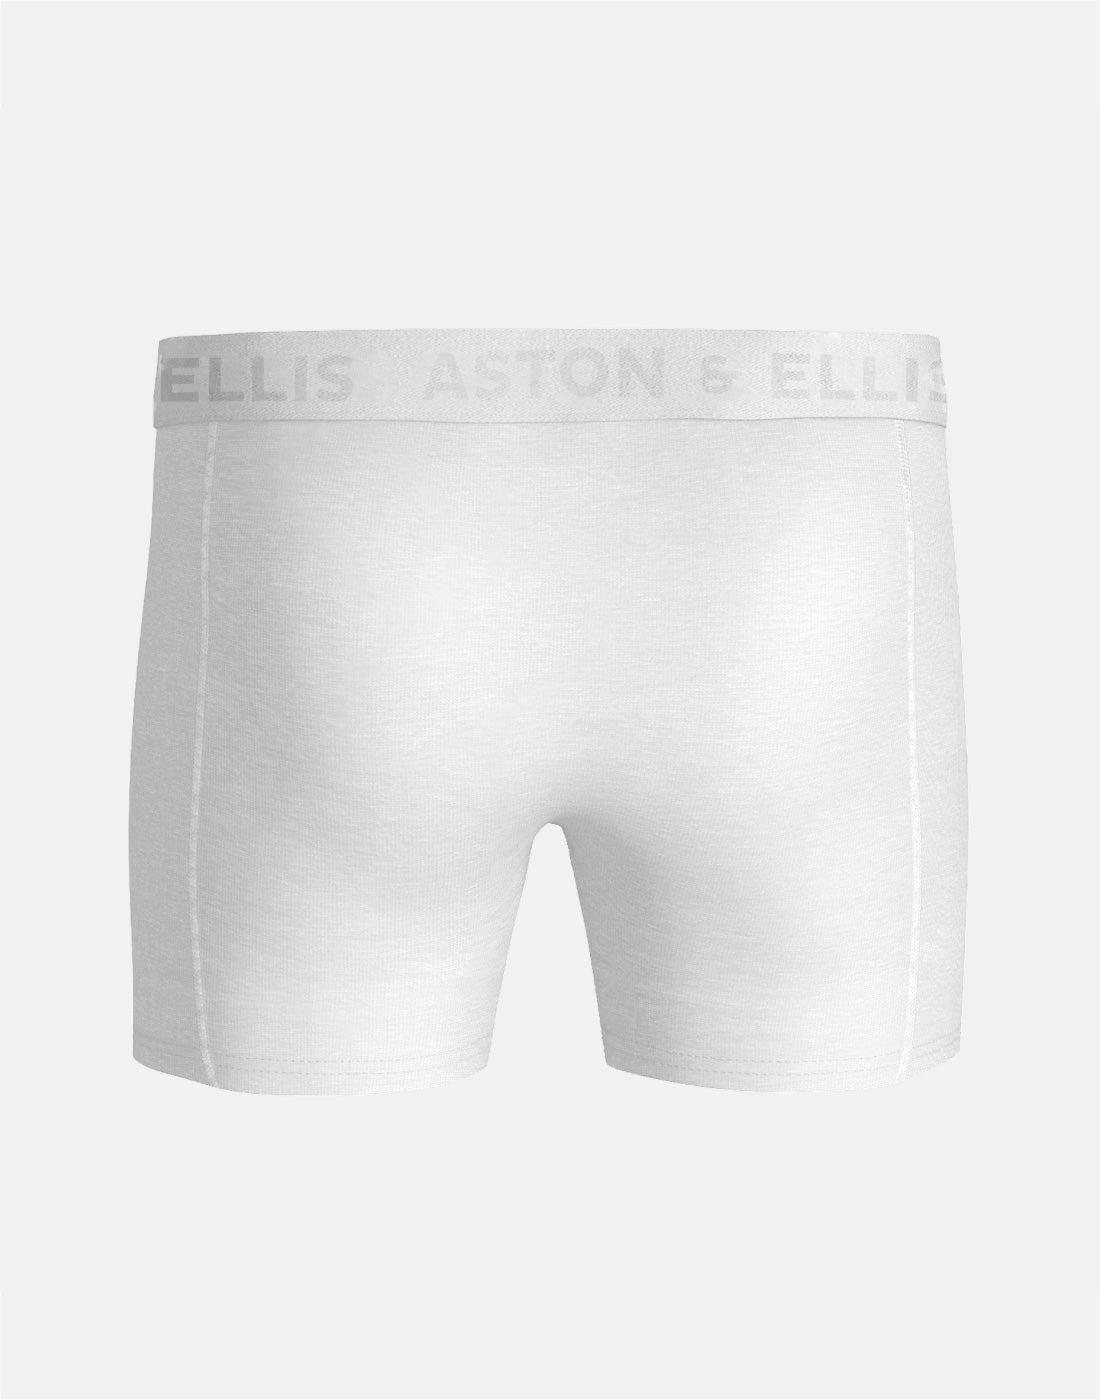 boxershorts-aston-ellis-white-front